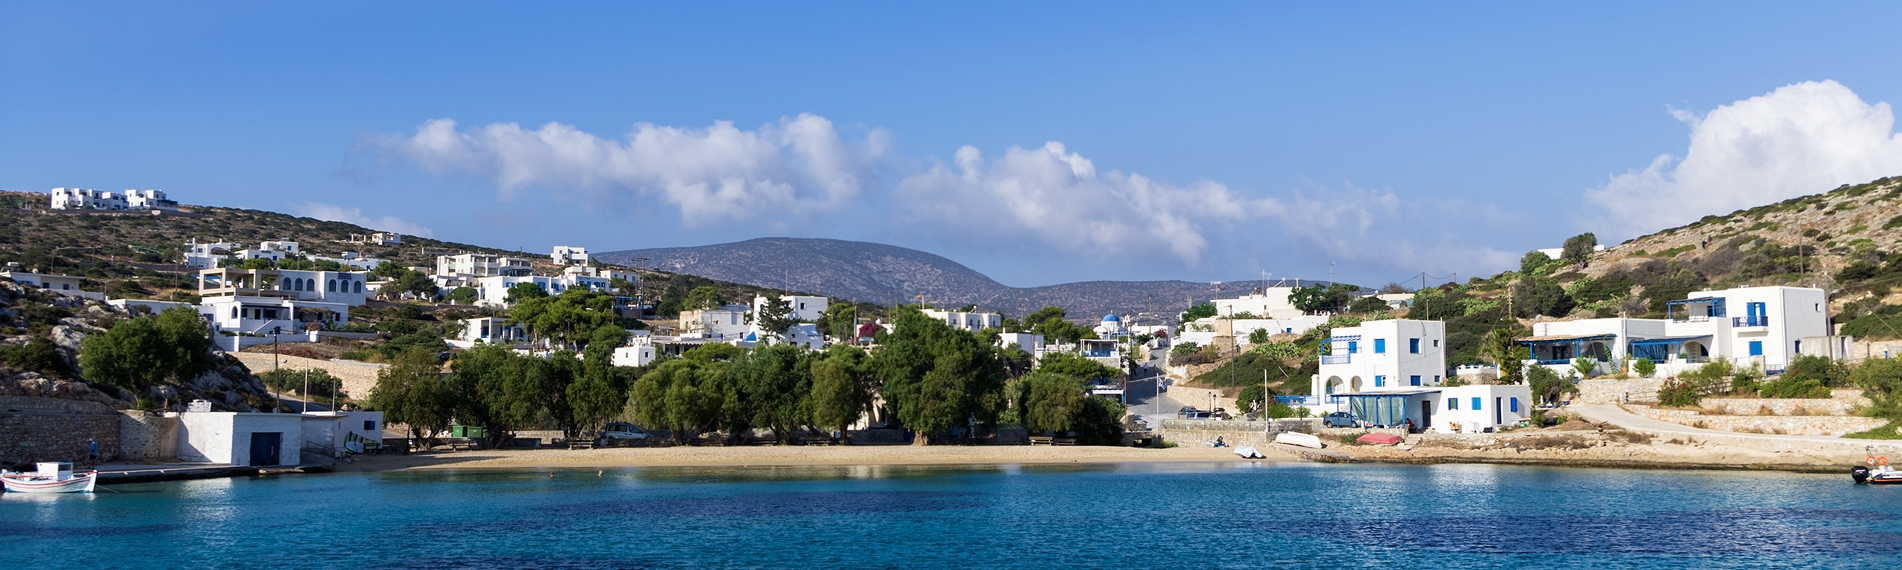 Casas blancas en la playa en Iraklia en las islas Cícladas